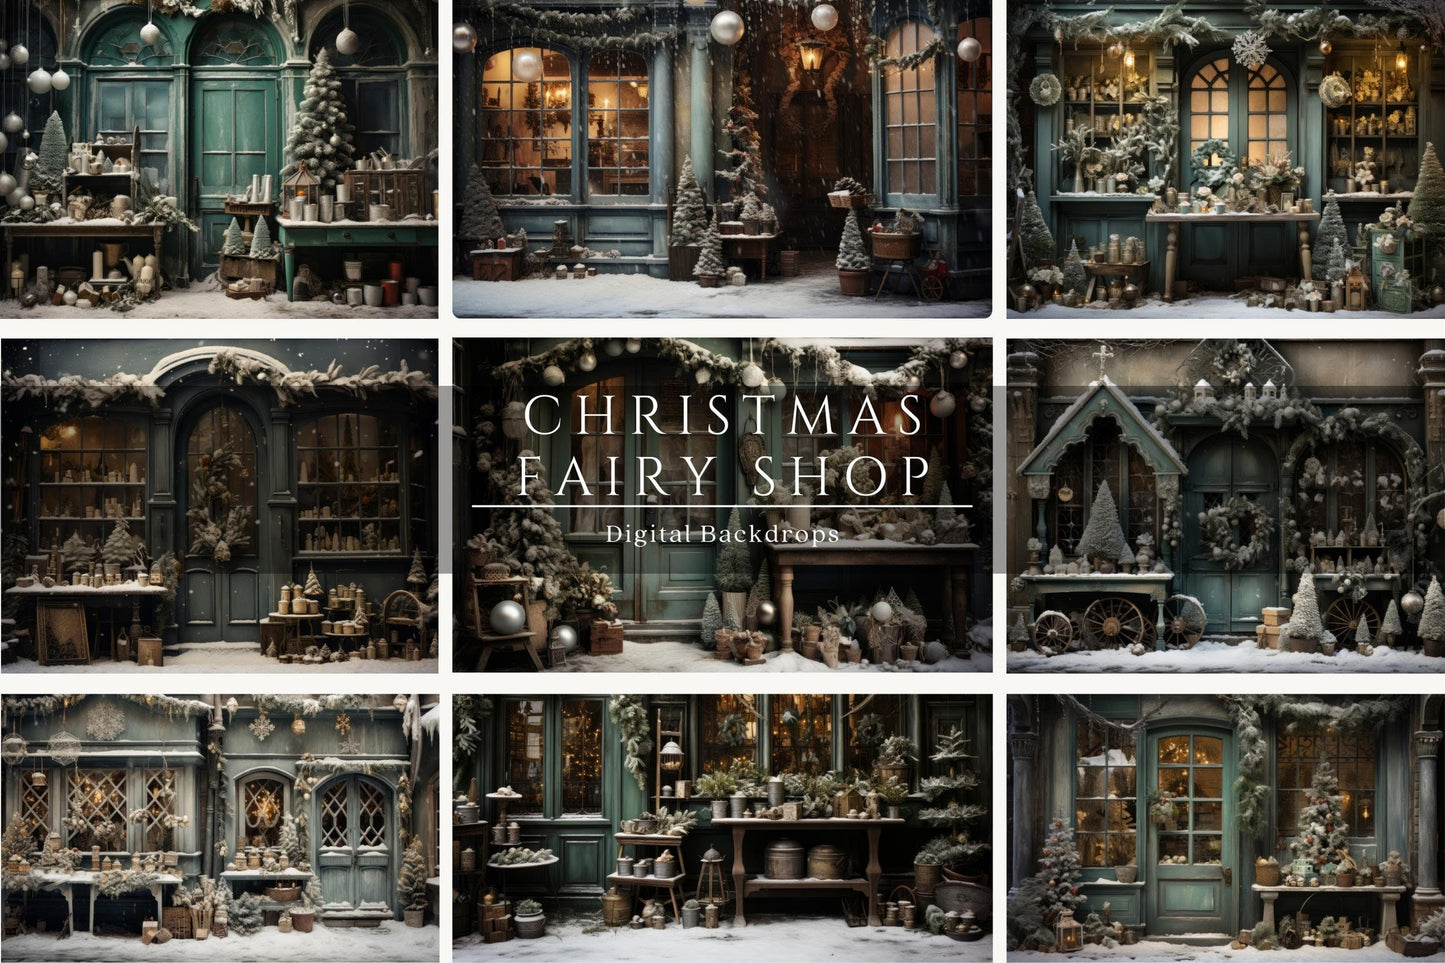 Christmas Fairy Shop Digital Backdrops